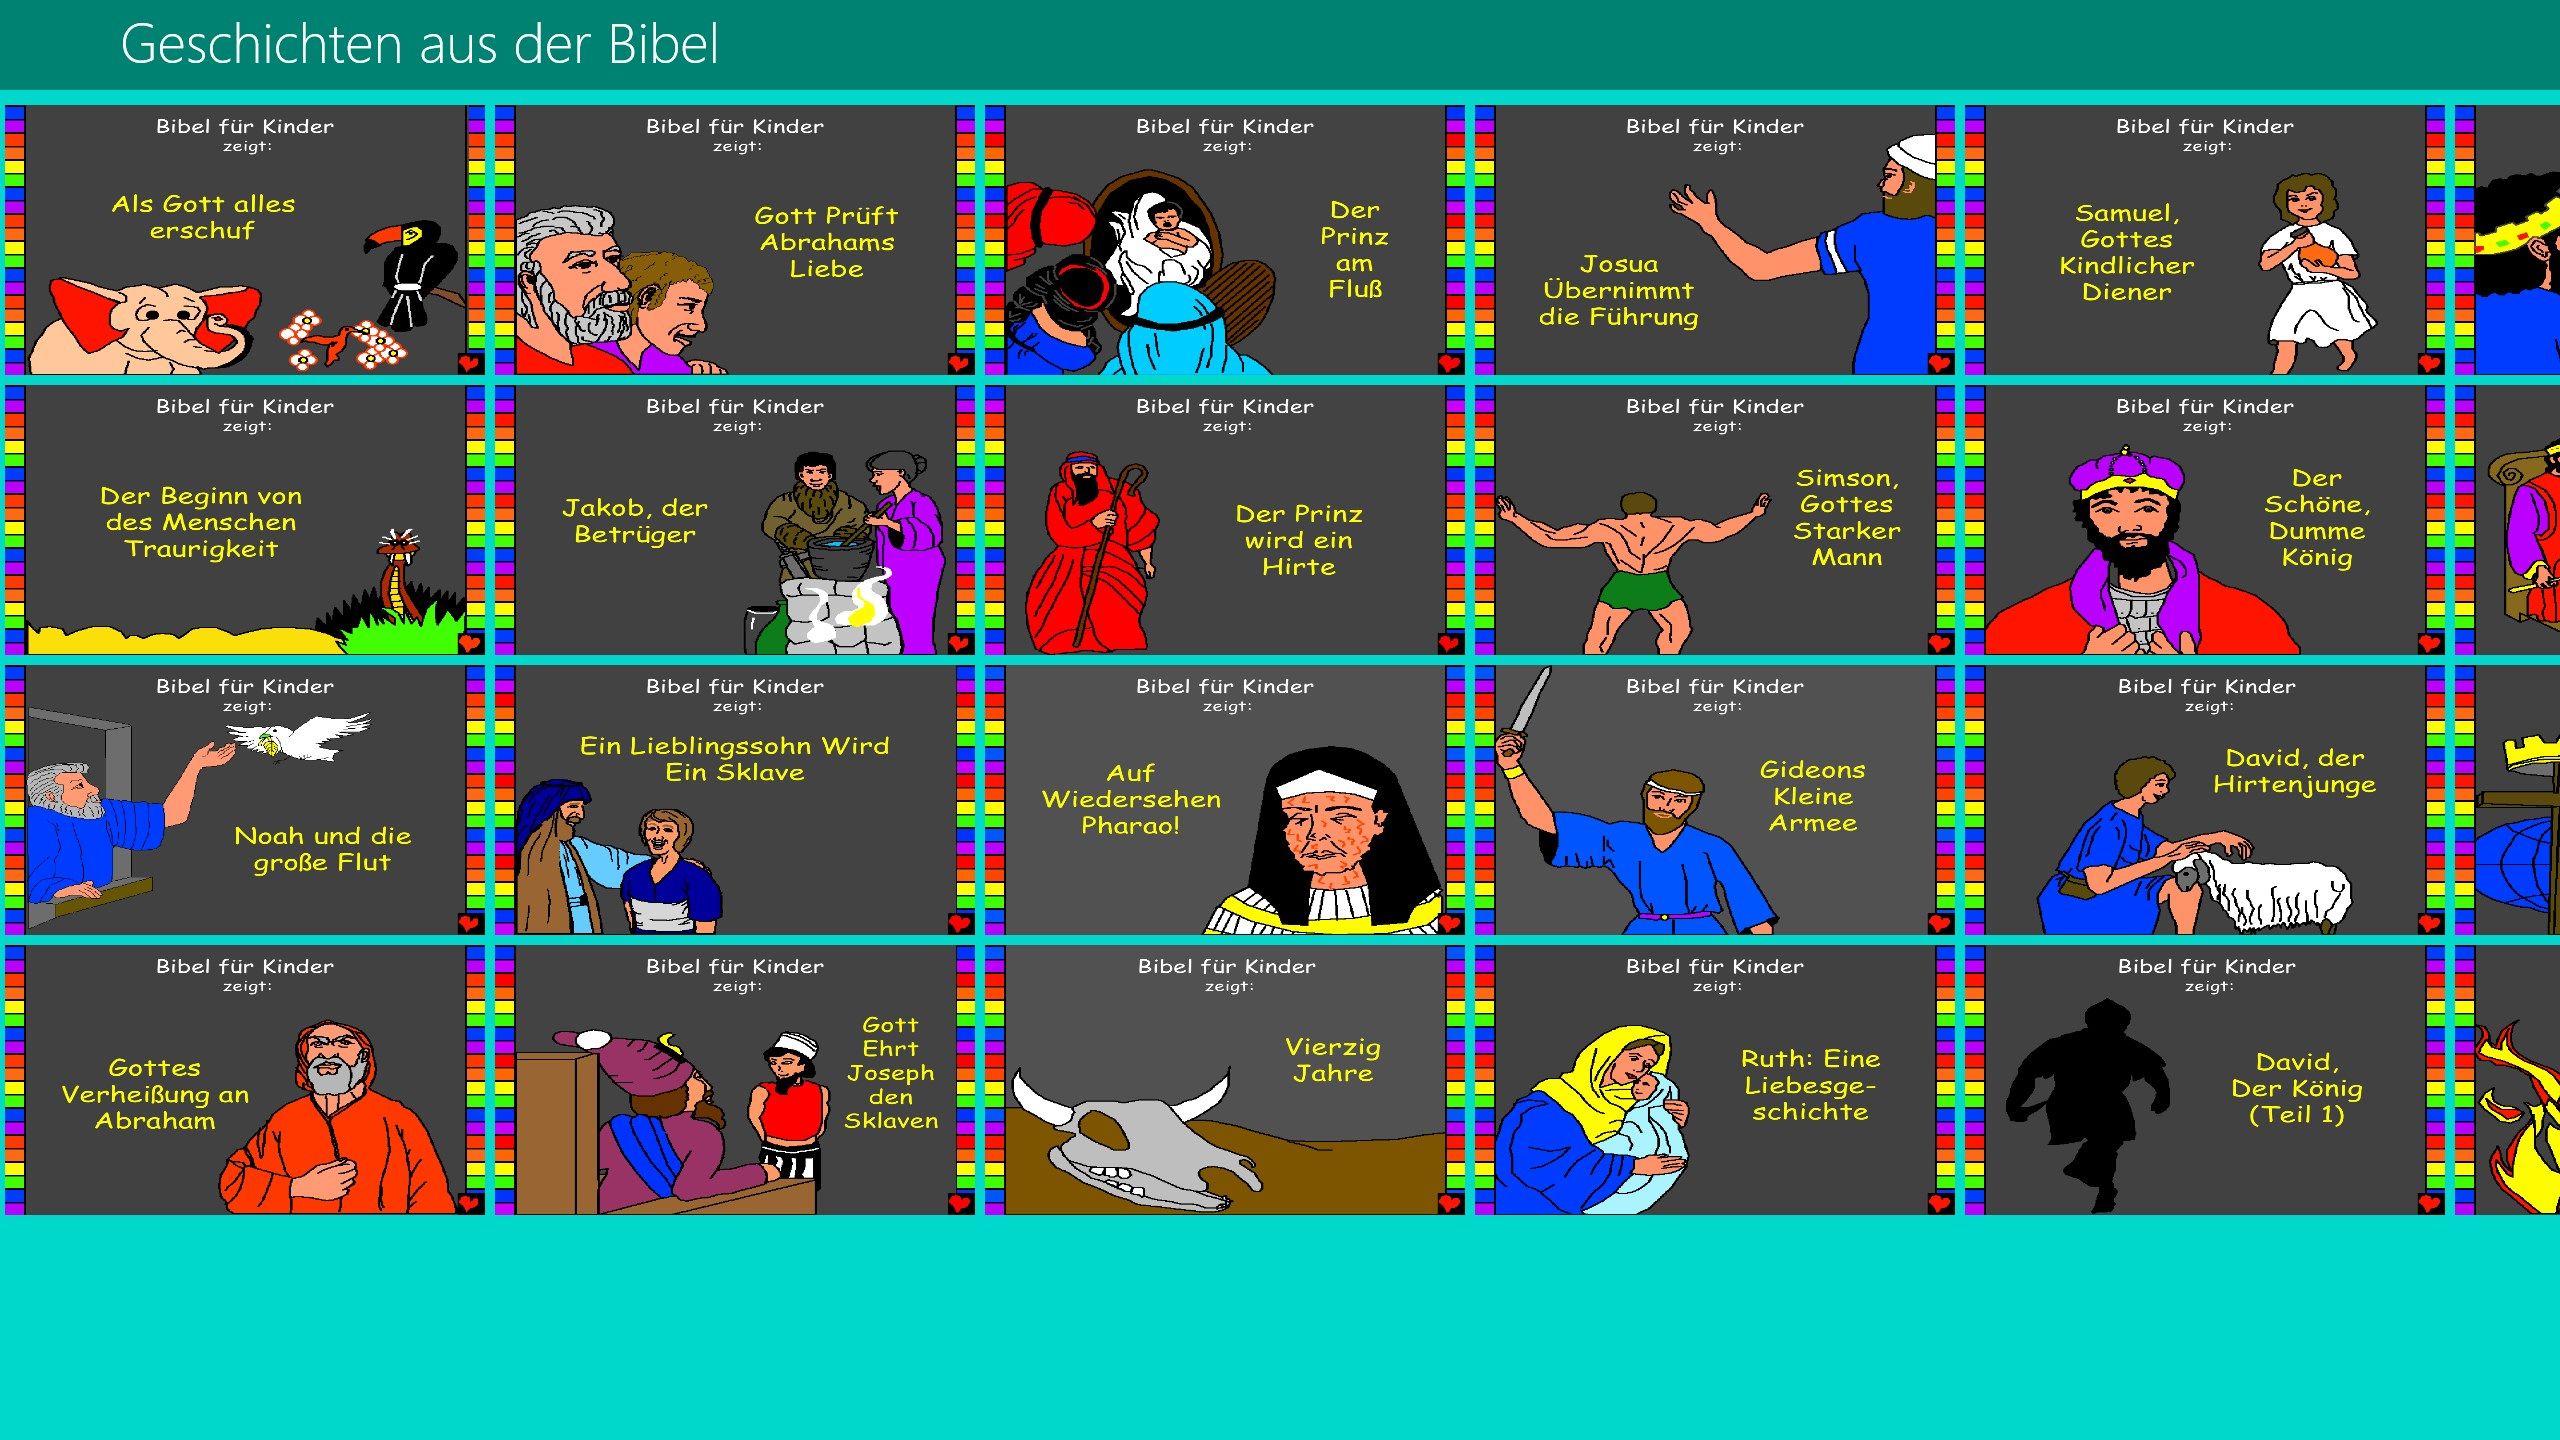 Sammlung von 56 Geschichten aus der Bibel dargestellt.